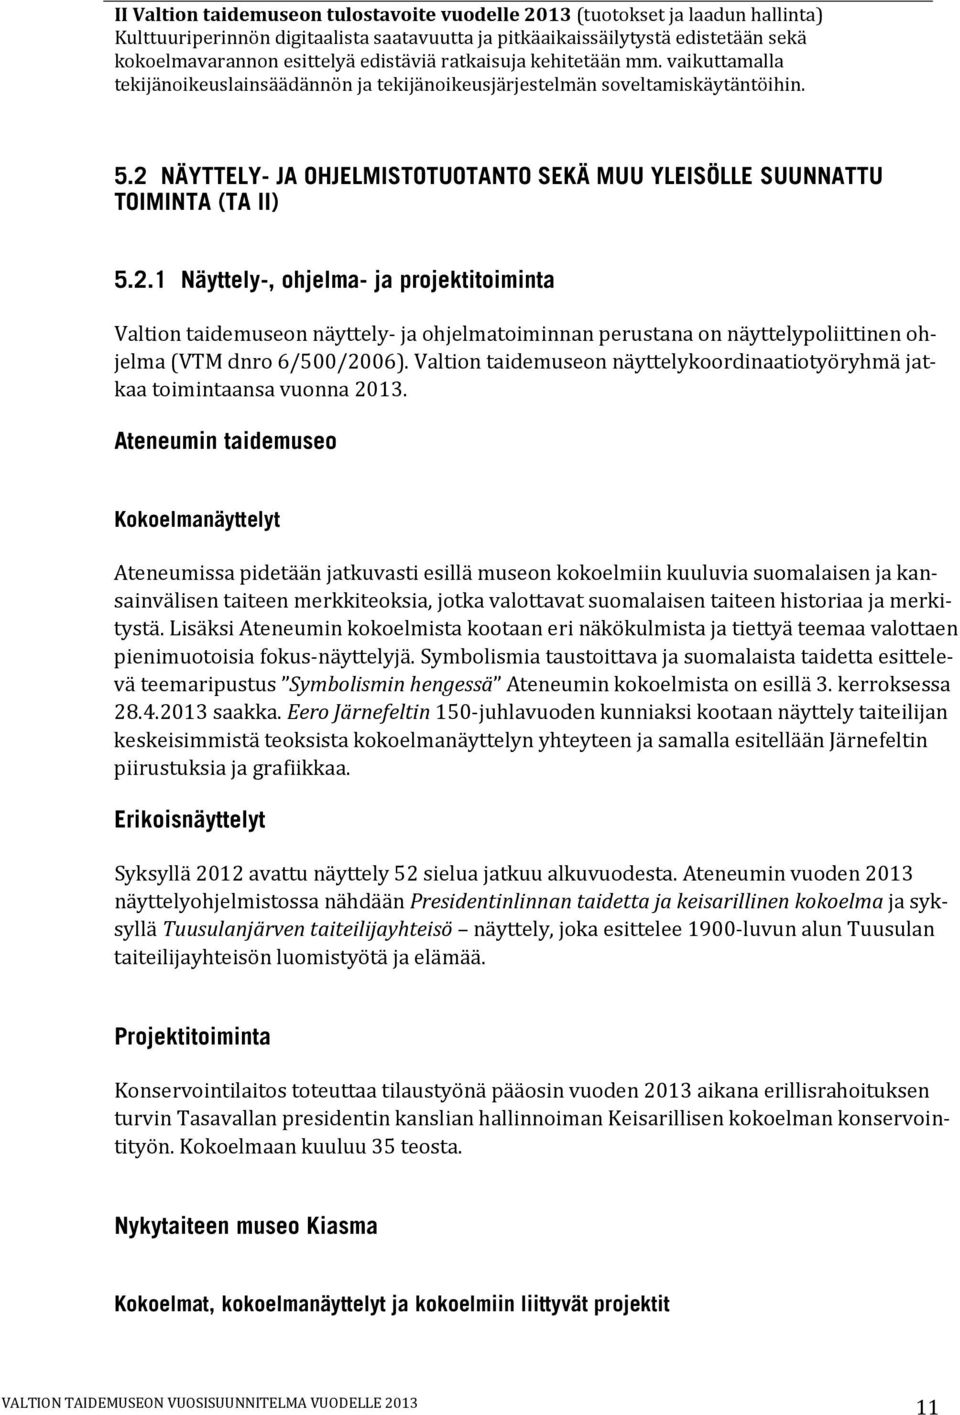 2 NÄYTTELY- JA OHJELMISTOTUOTANTO SEKÄ MUU YLEISÖLLE SUUNNATTU TOIMINTA (TA II) 5.2.1 Näyttely-, ohjelma- ja projektitoiminta Valtion taidemuseon näyttely- ja ohjelmatoiminnan perustana on näyttelypoliittinen ohjelma (VTM dnro 6/500/2006).